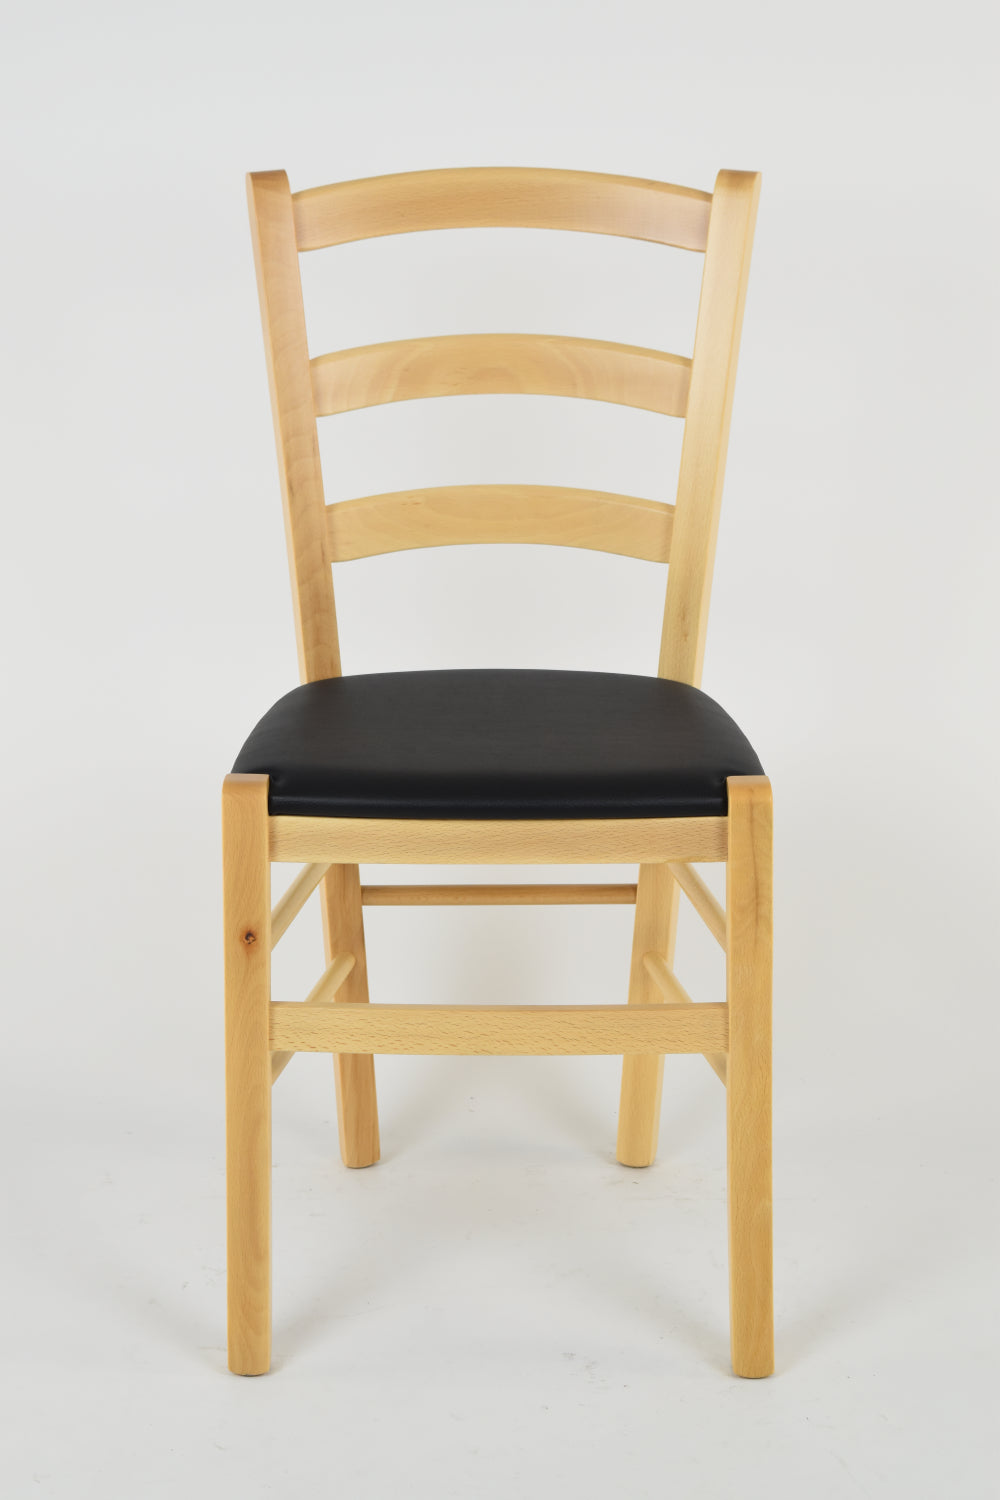 Tommychairs - Set 2 sillas de Cocina y Comedor Venice, Estructura en Madera de Haya Color Natural y Asiento tapizado en Polipiel Color Negro